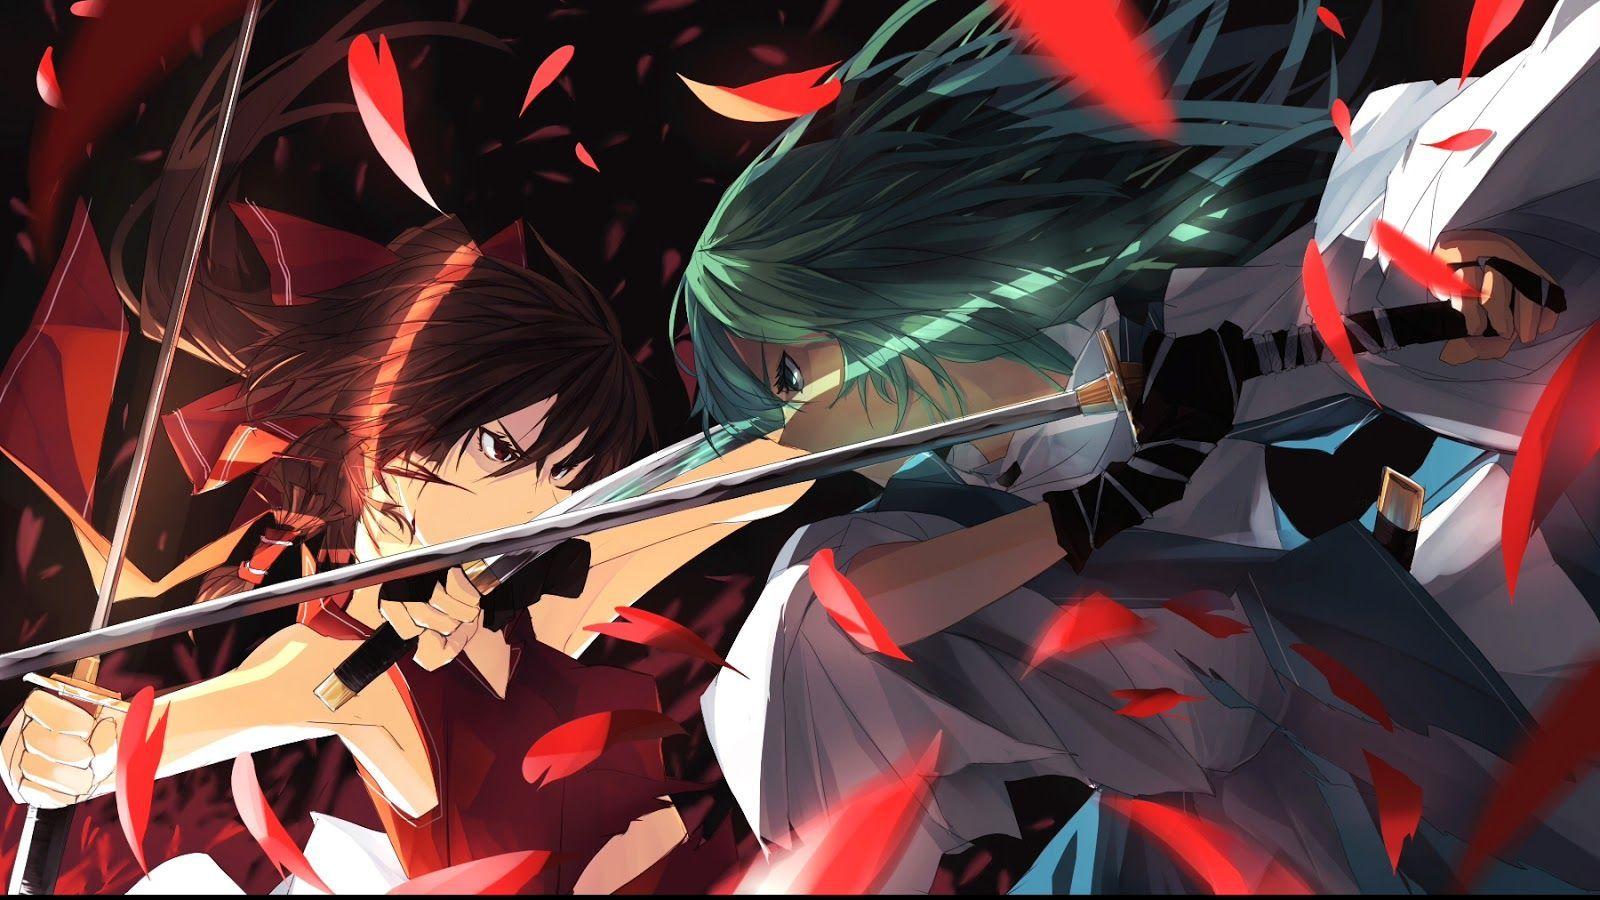 wallpaper: Anime Wallpaper Girls Sword Fighting